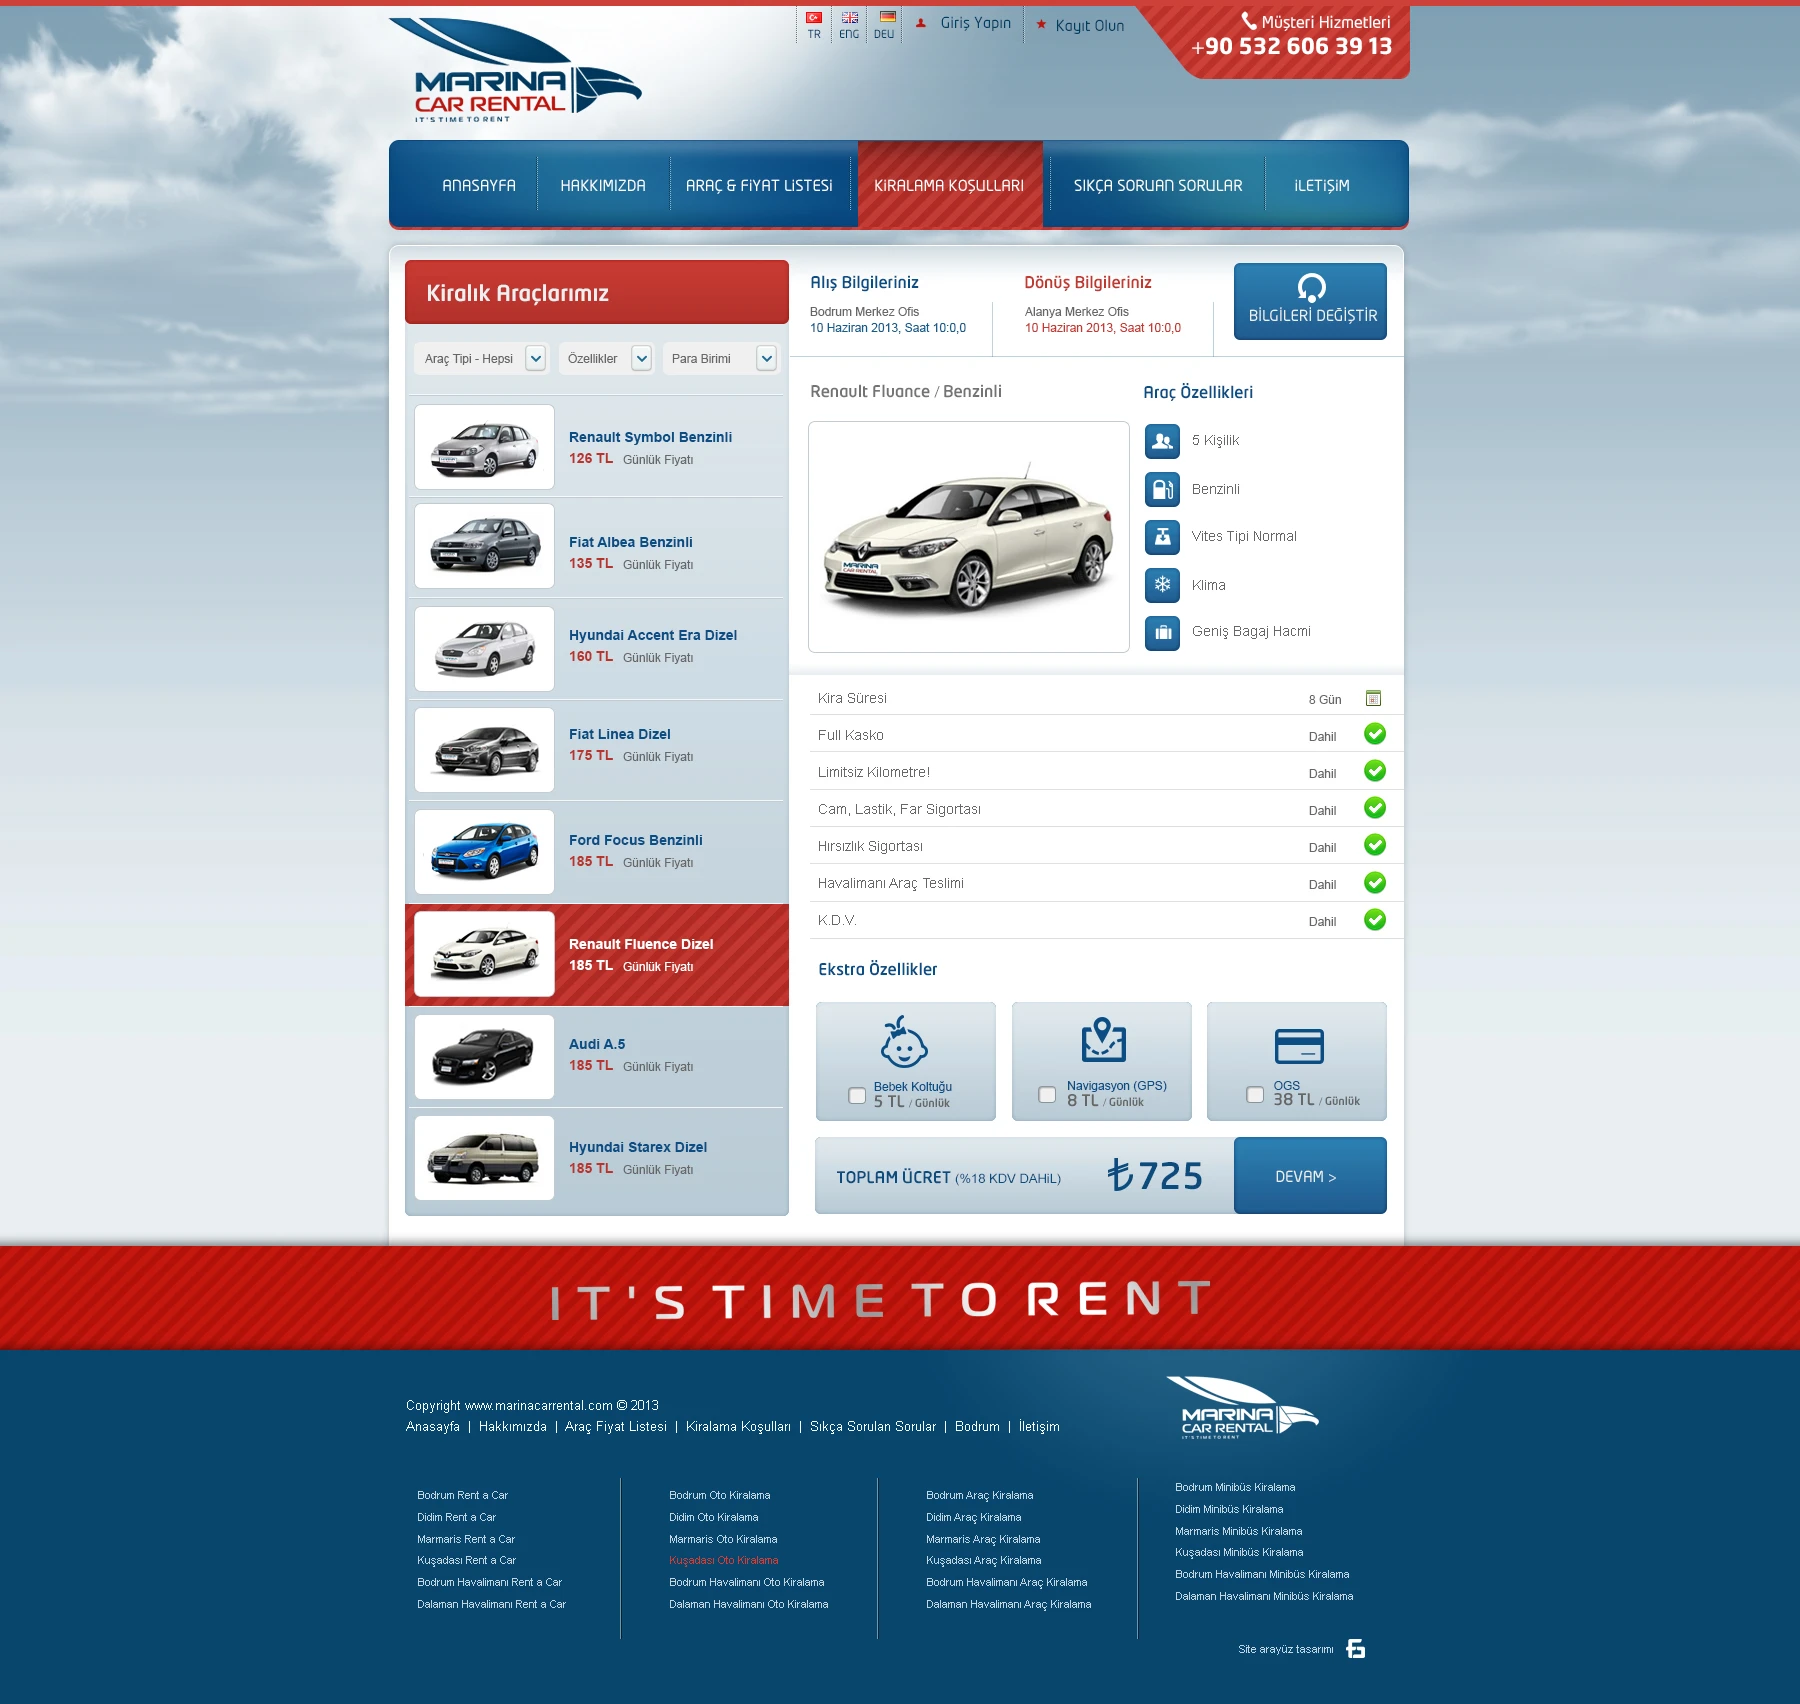 Marina Car Rental - Araç Kiralama Sitesi Web Arayüz Tasarımı / Araç Detay